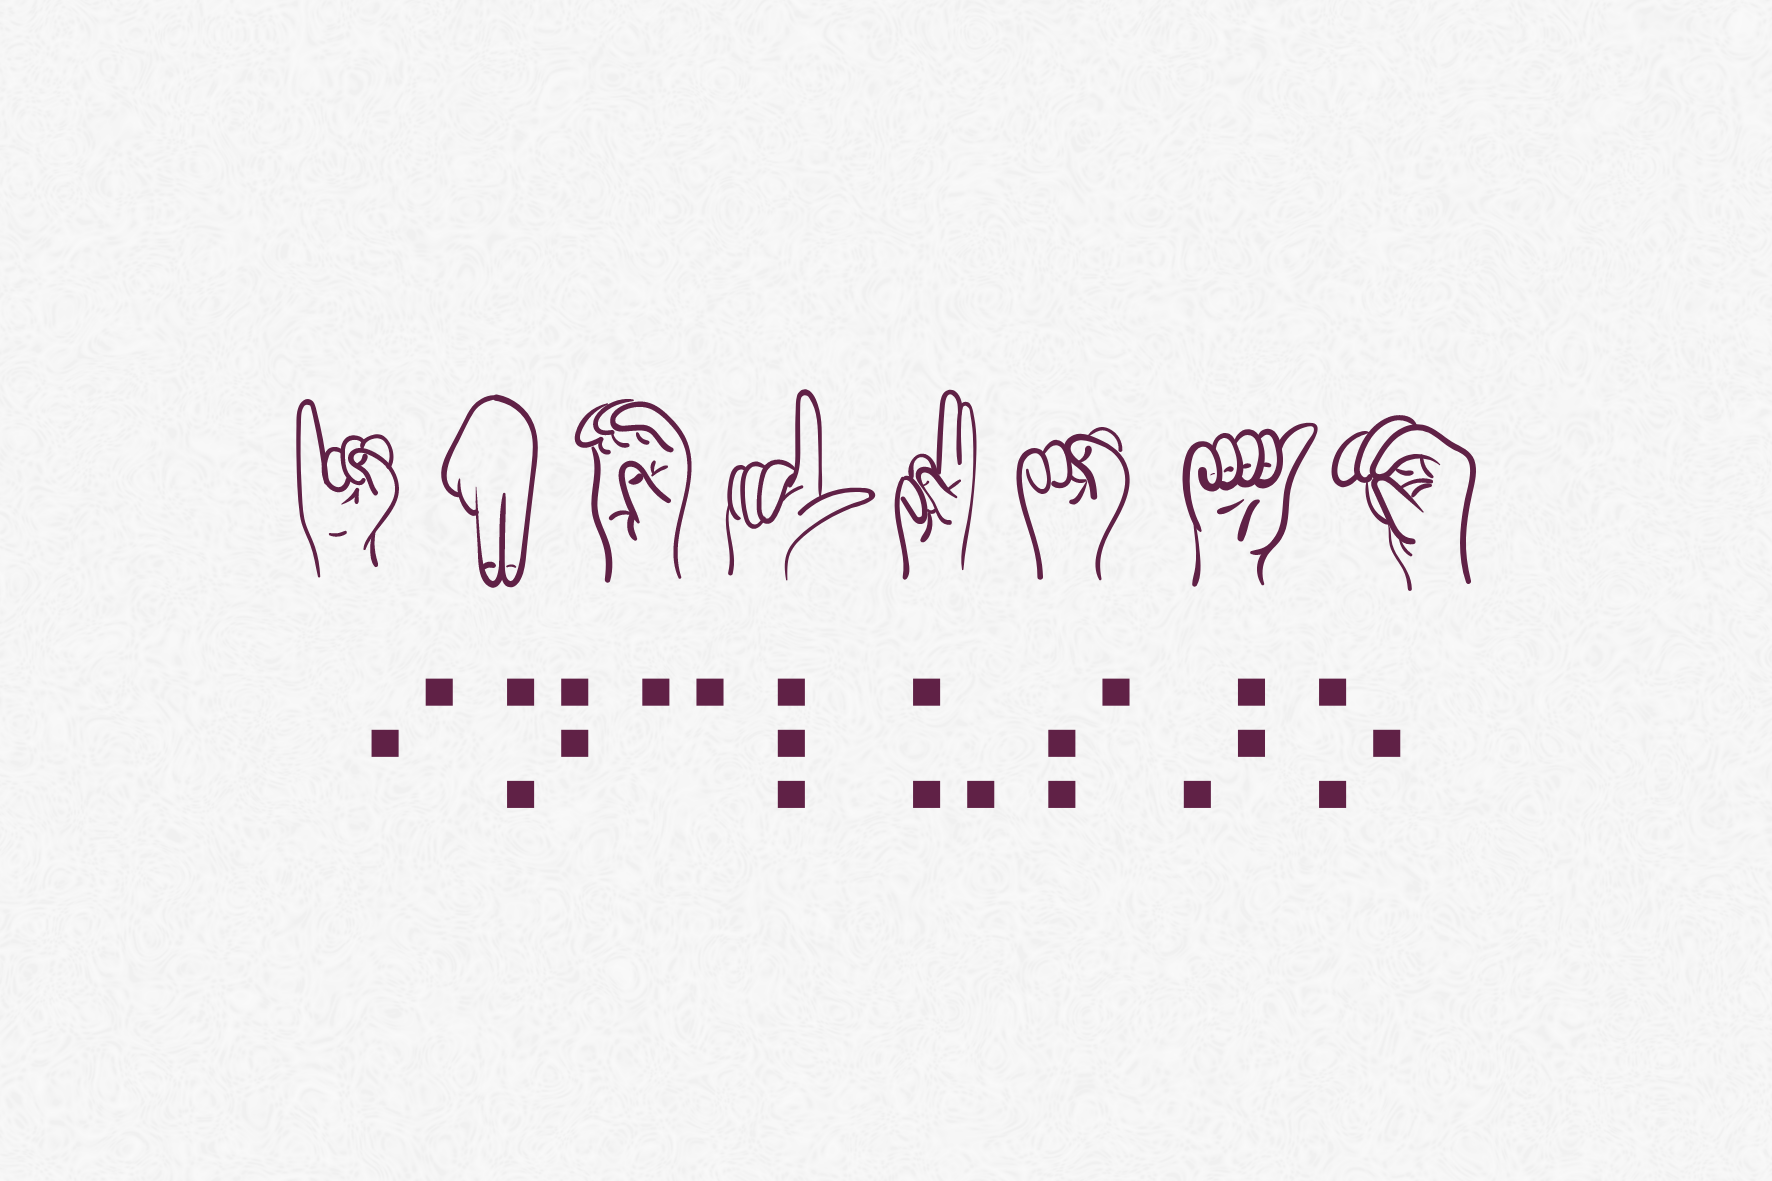 Banner arte e inclusão com a palavra inclusão representada pelo alfabeto em Libras e em Braille.